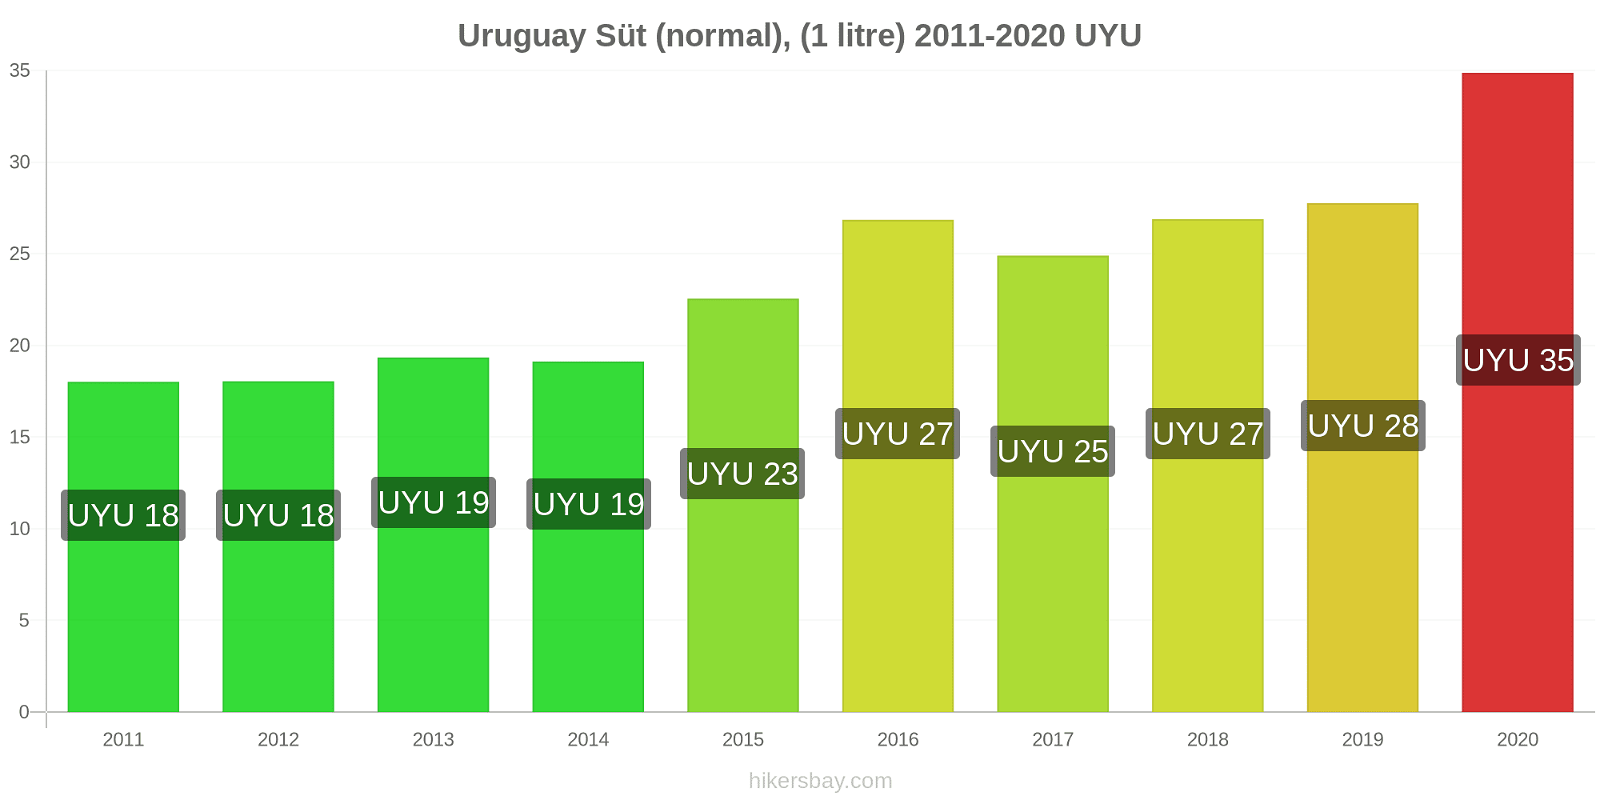 Uruguay fiyat değişiklikleri Süt (normal), (1 litre) hikersbay.com